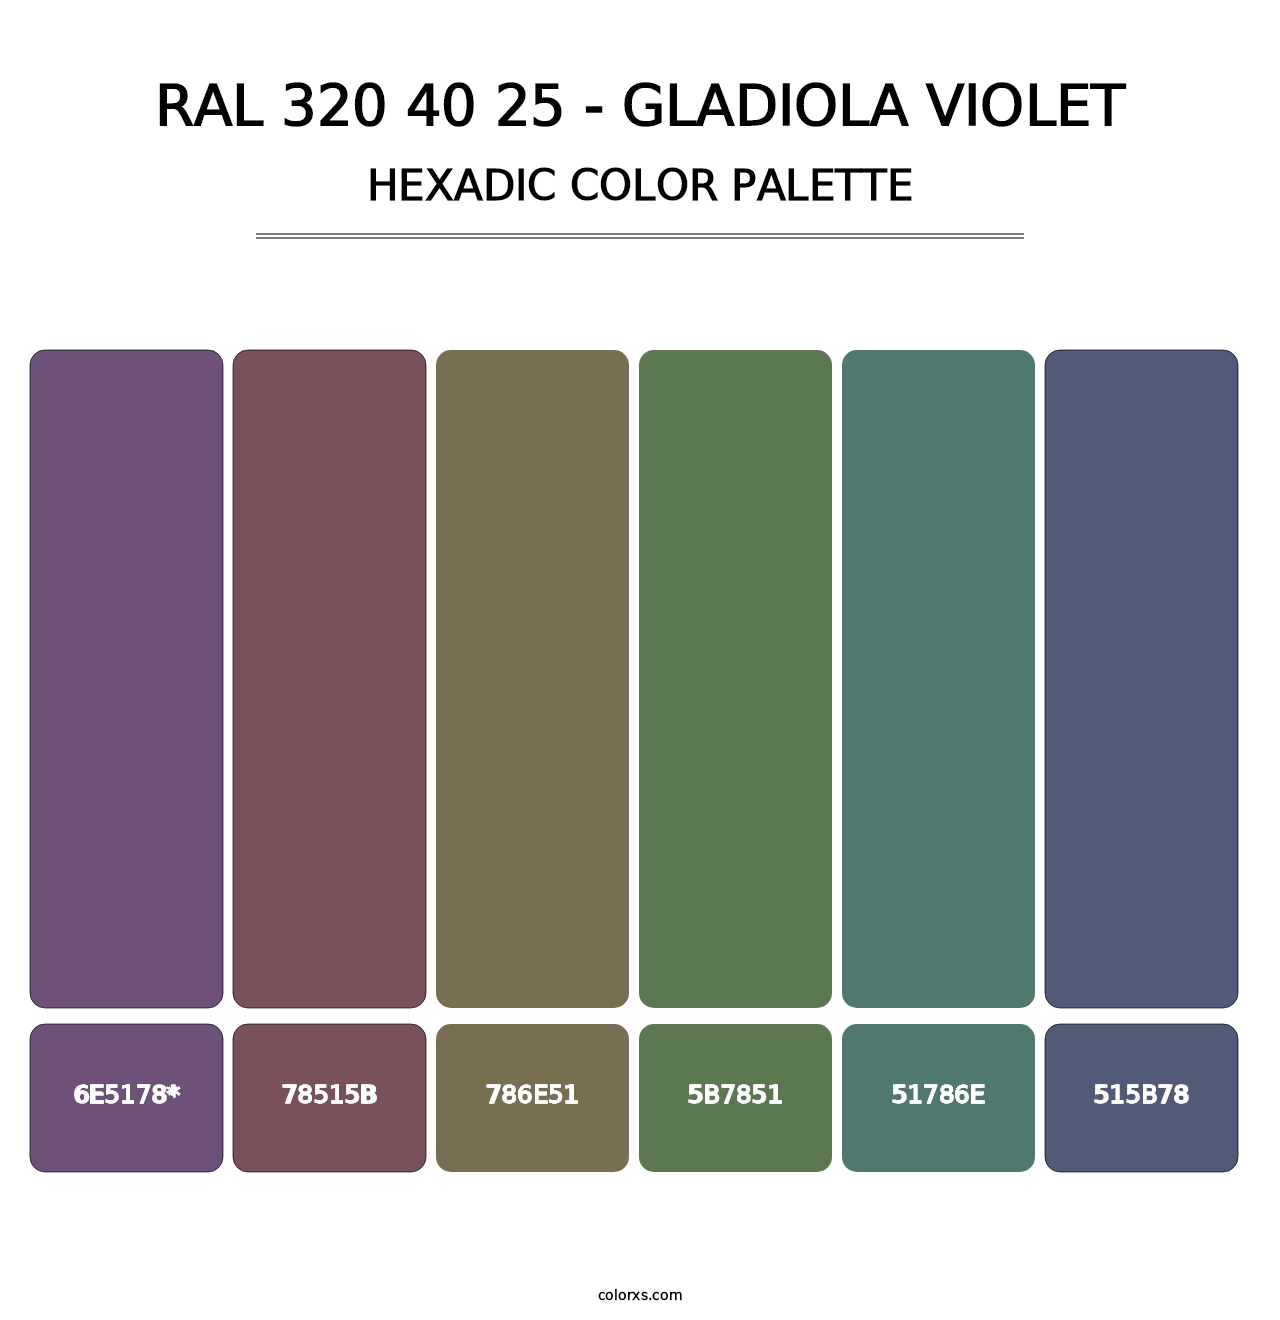 RAL 320 40 25 - Gladiola Violet - Hexadic Color Palette